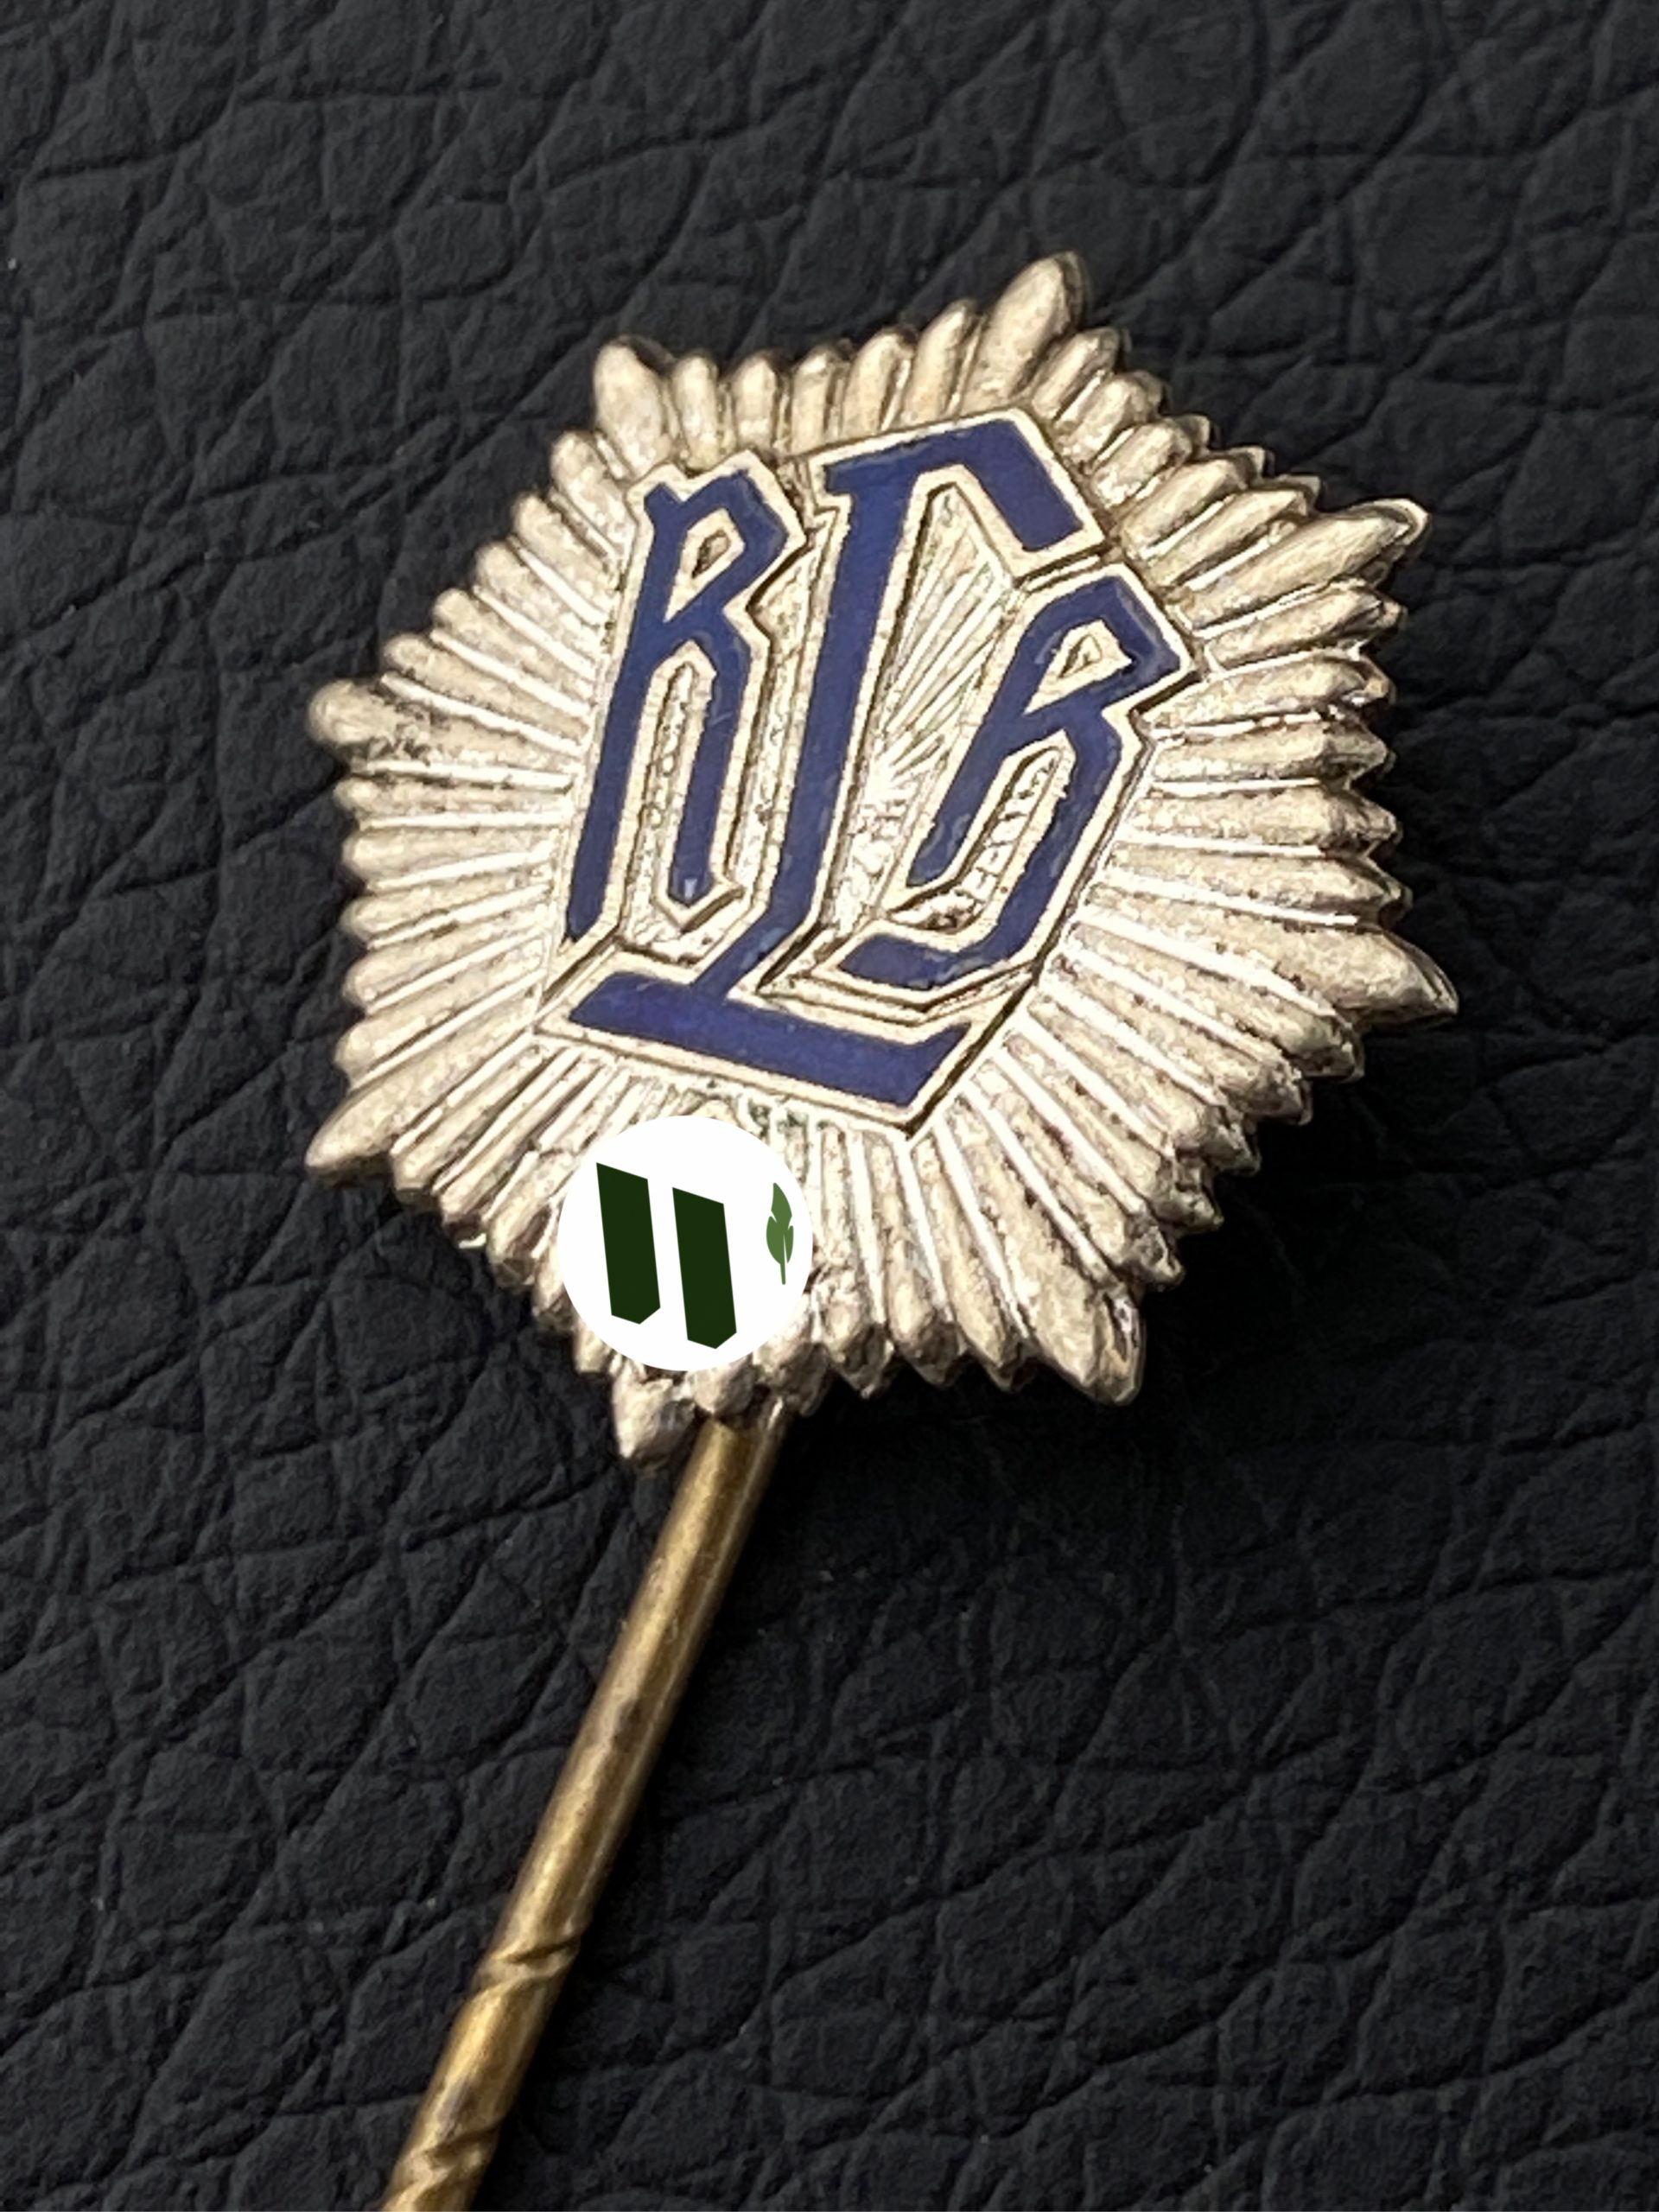 Членский знак RLB – Reichsluftschutzbund (Имперский союз противовоздушной обороны).